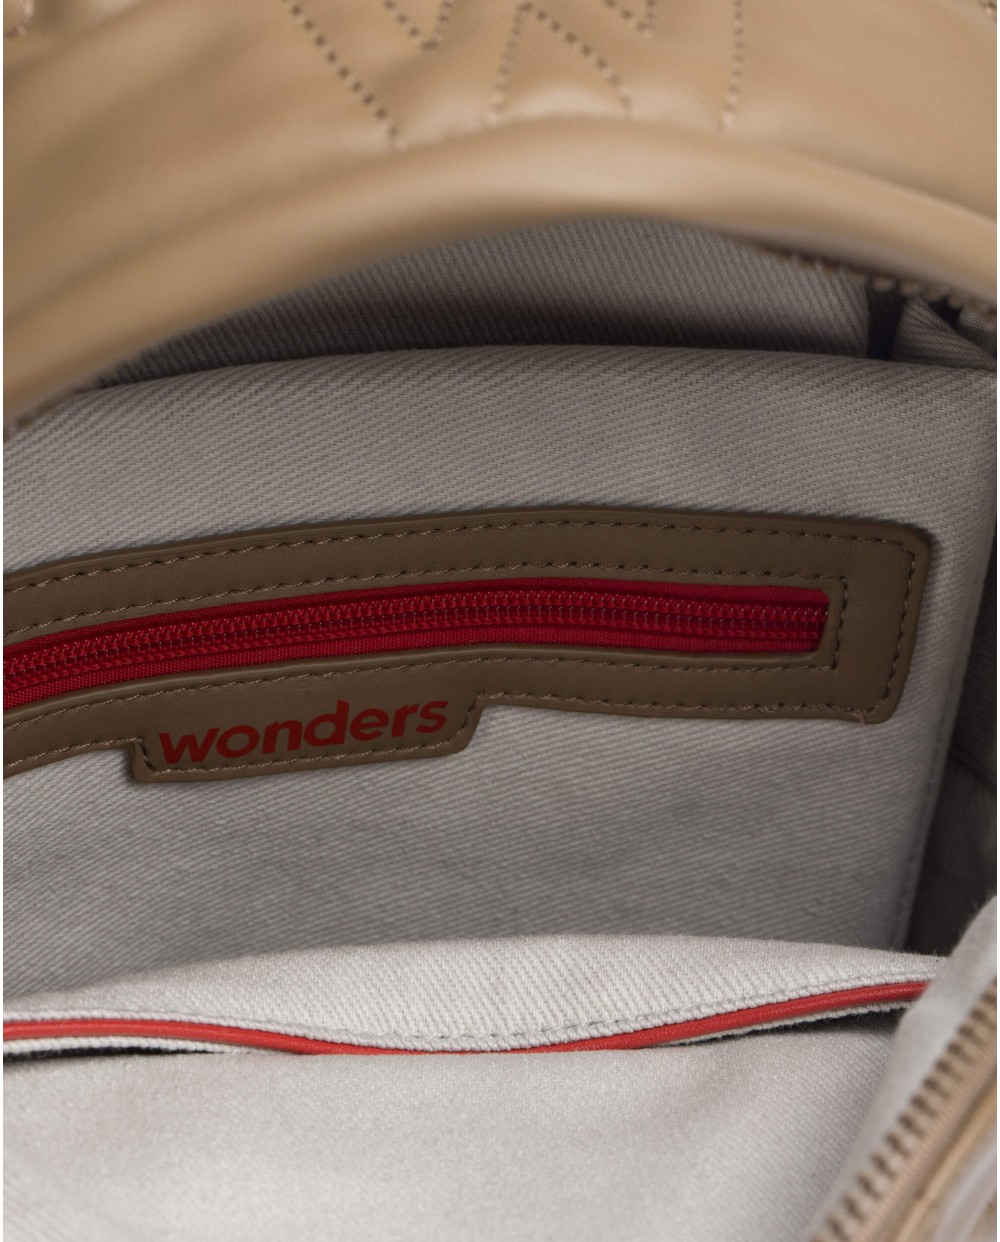 Wonders-Bags-Mink school backpack